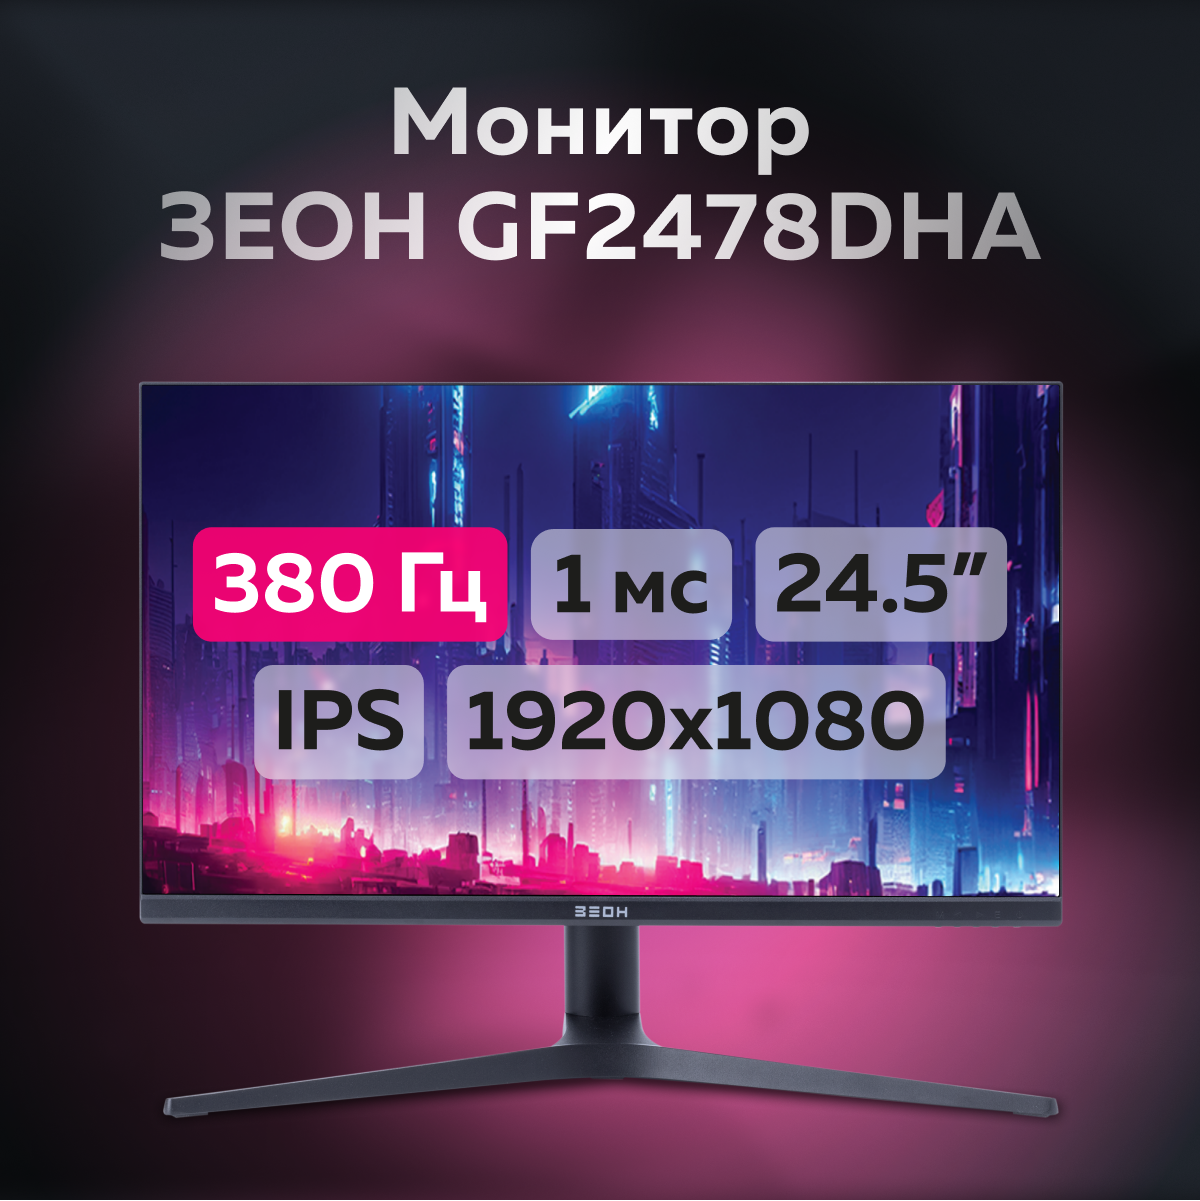 Монитор ЗЕОН GF2478DHA, купить в Москве, цены в интернет-магазинах на Мегамаркет